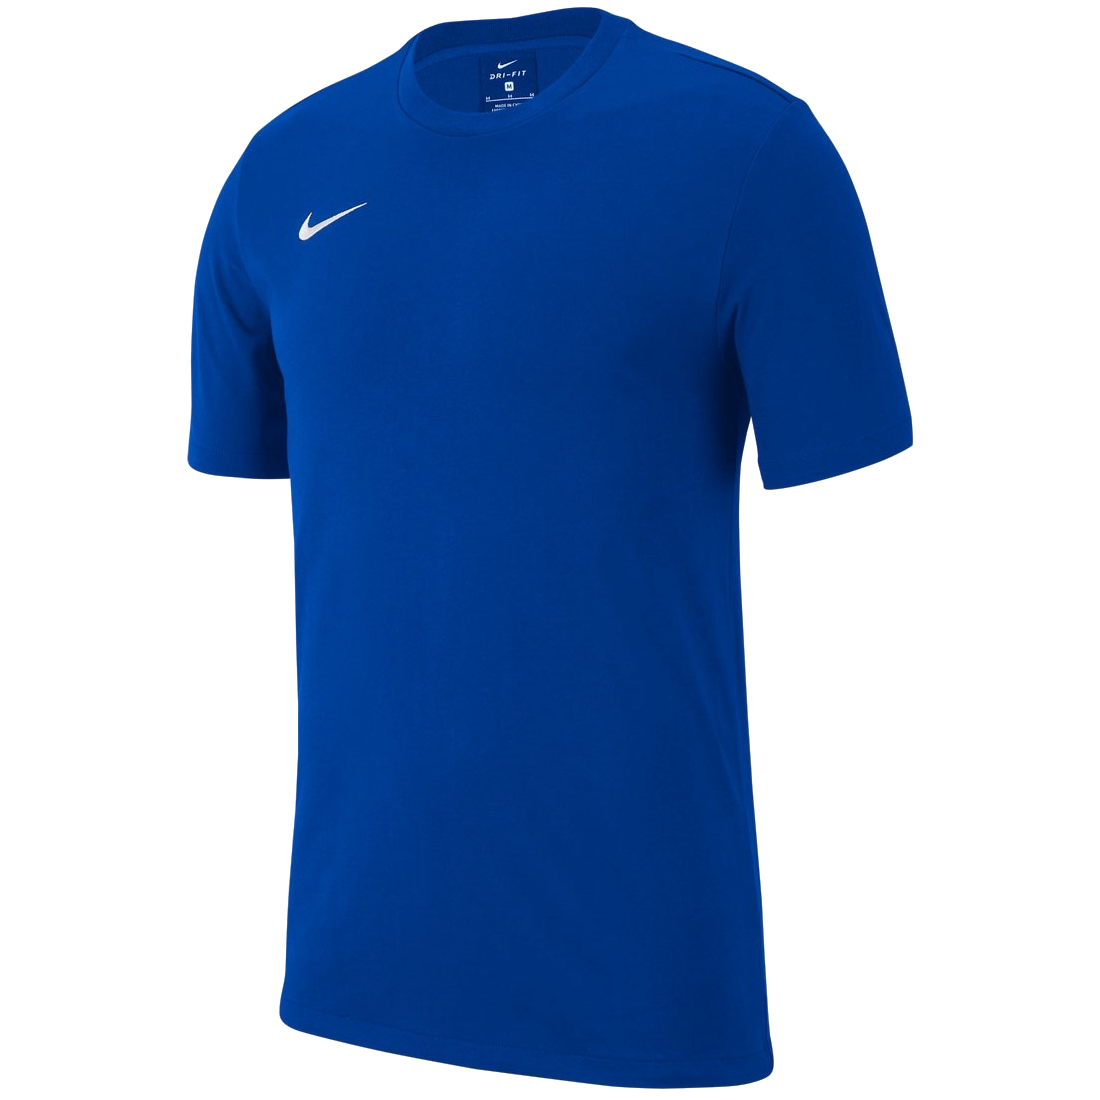 Nike Team Club 19 modrá/bílá UK Junior M Dětské